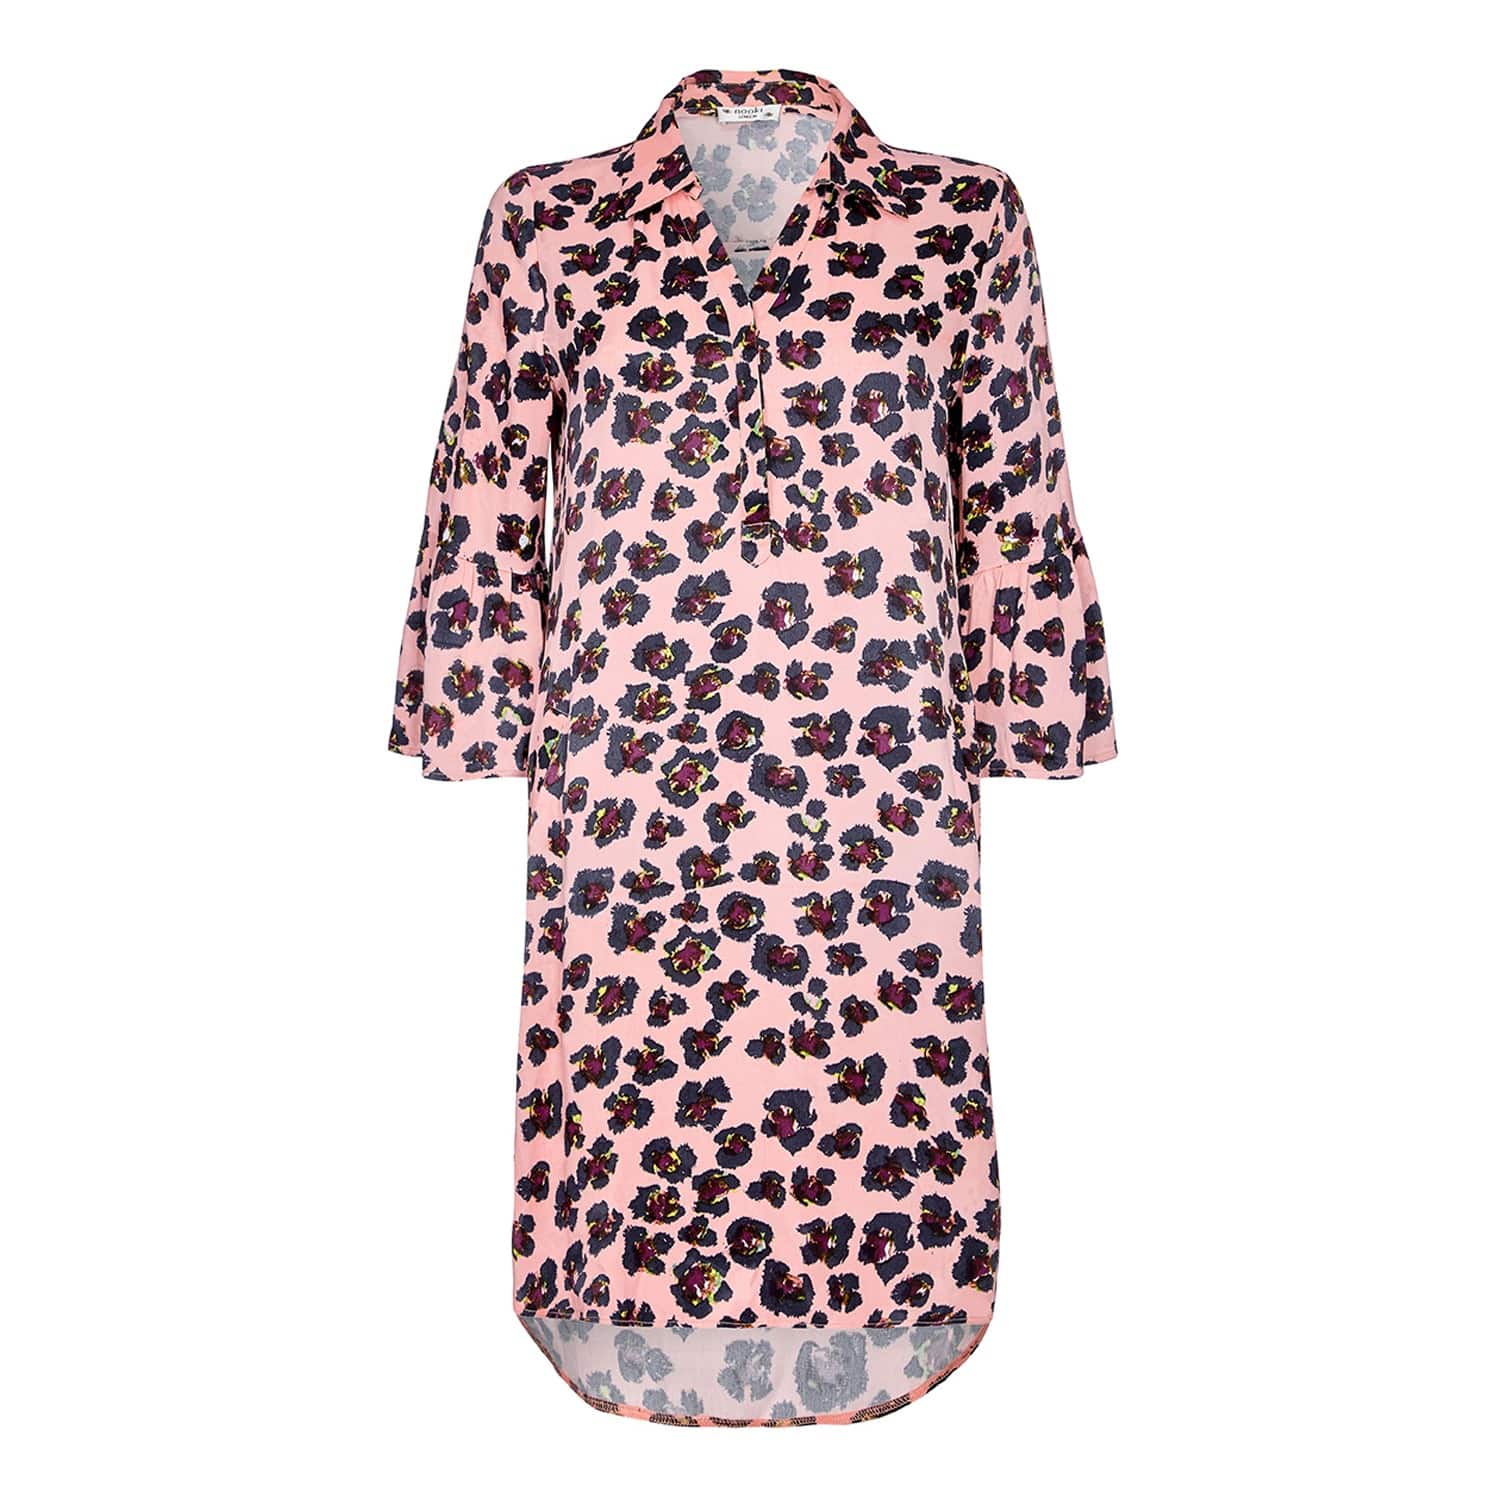 pink leopard print shirt dress